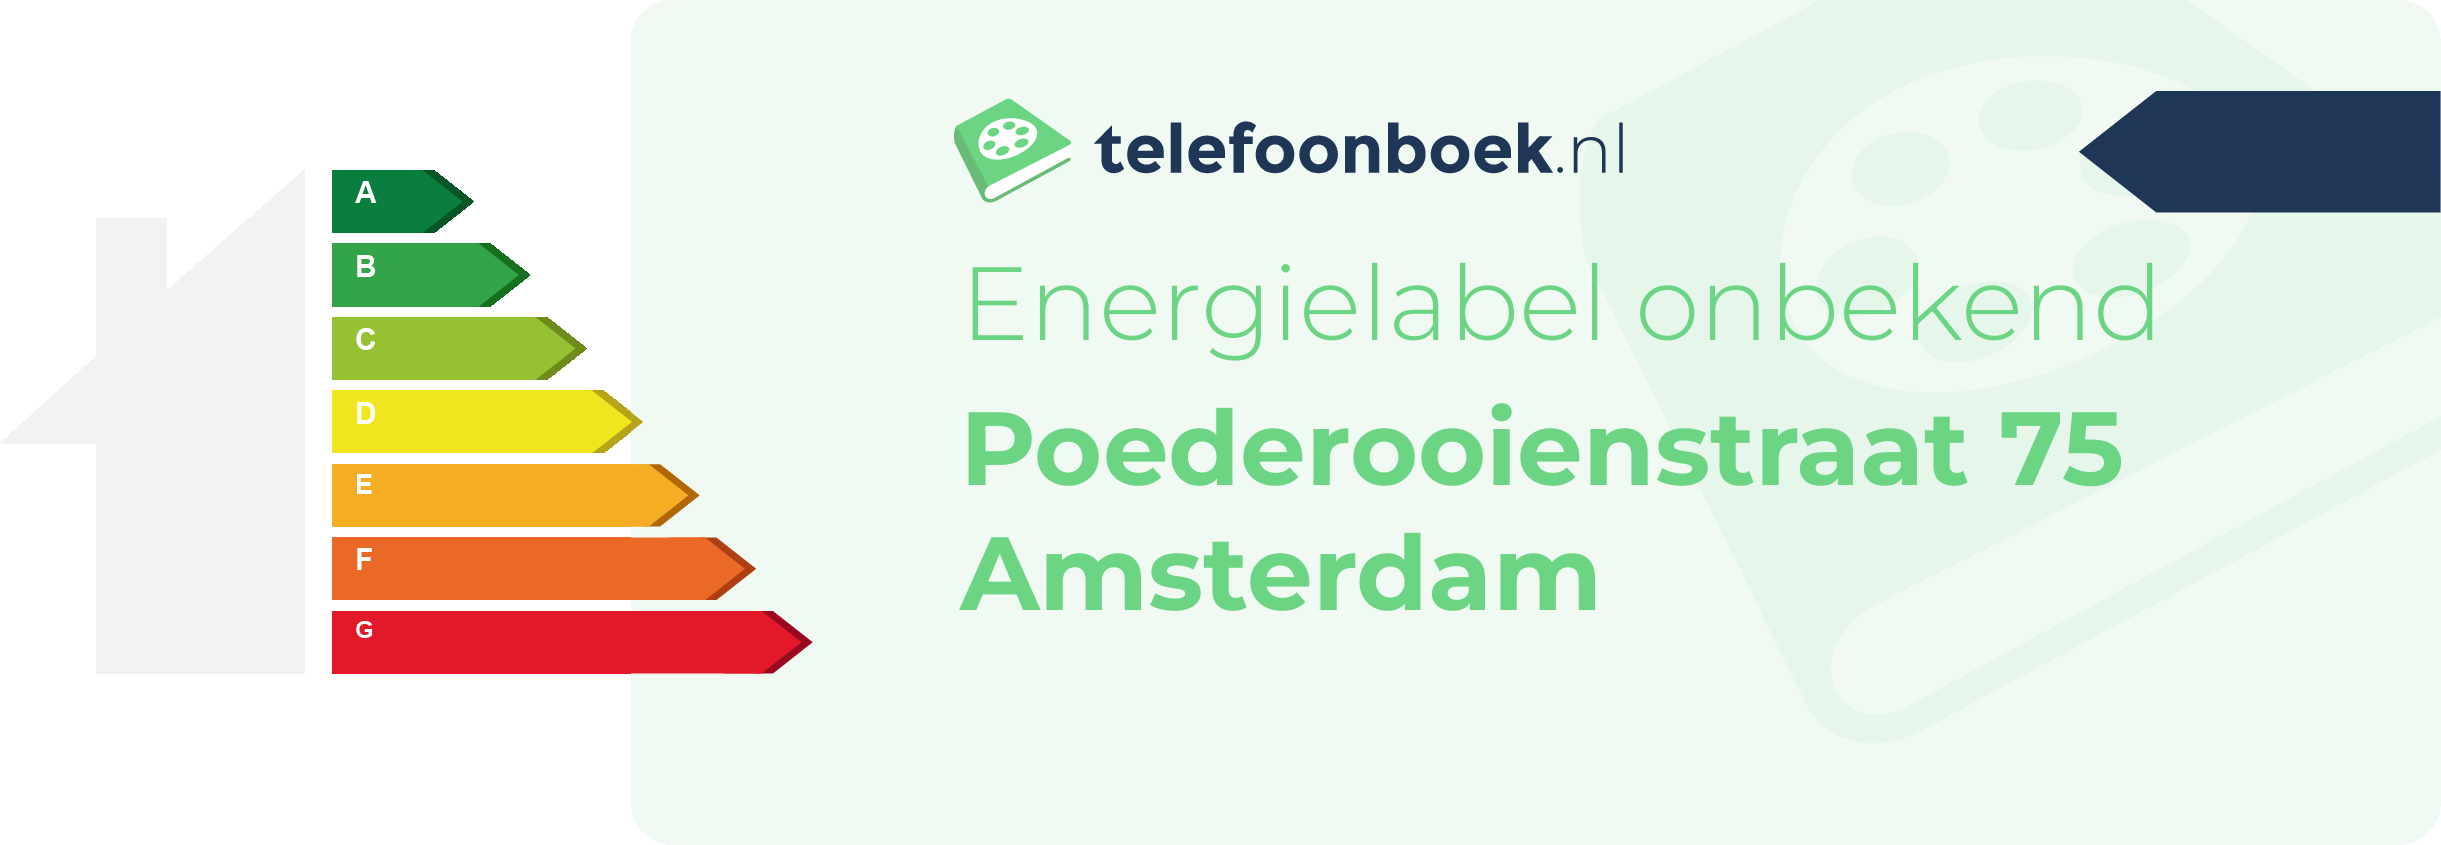 Energielabel Poederooienstraat 75 Amsterdam